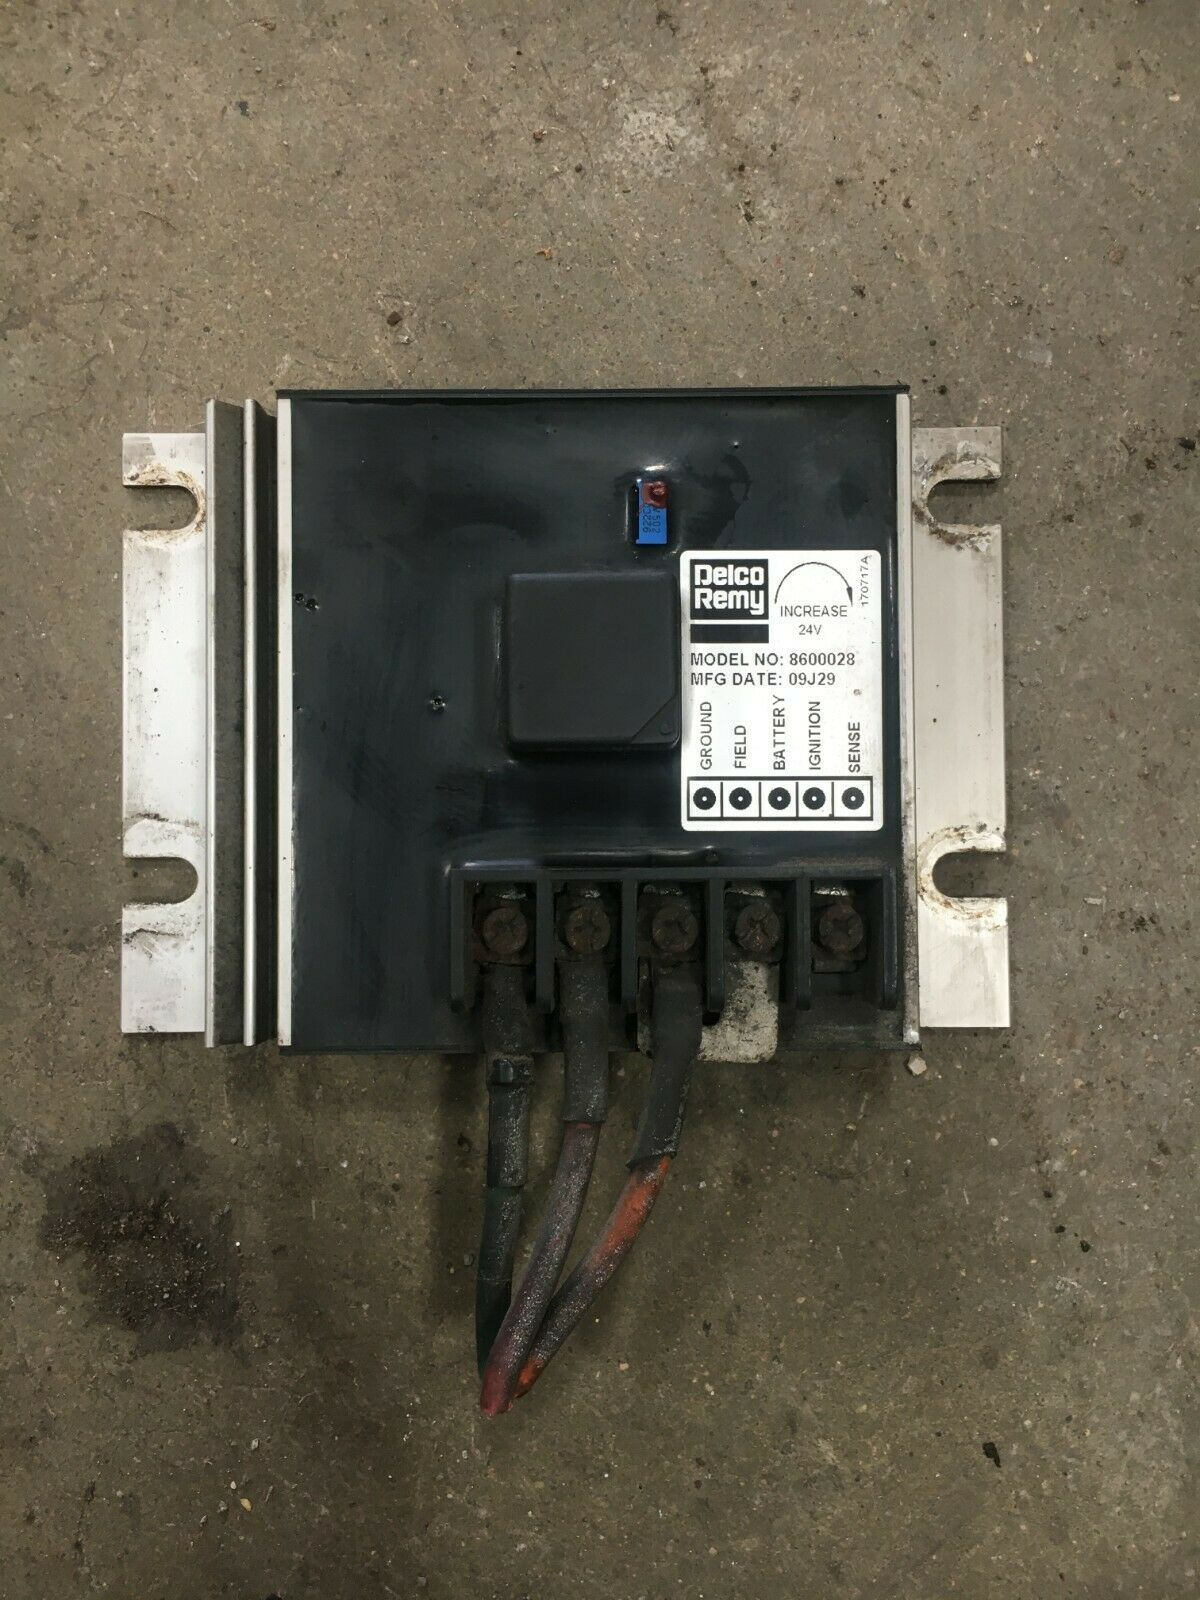 Delco Remy Voltage Regulator (8600028)